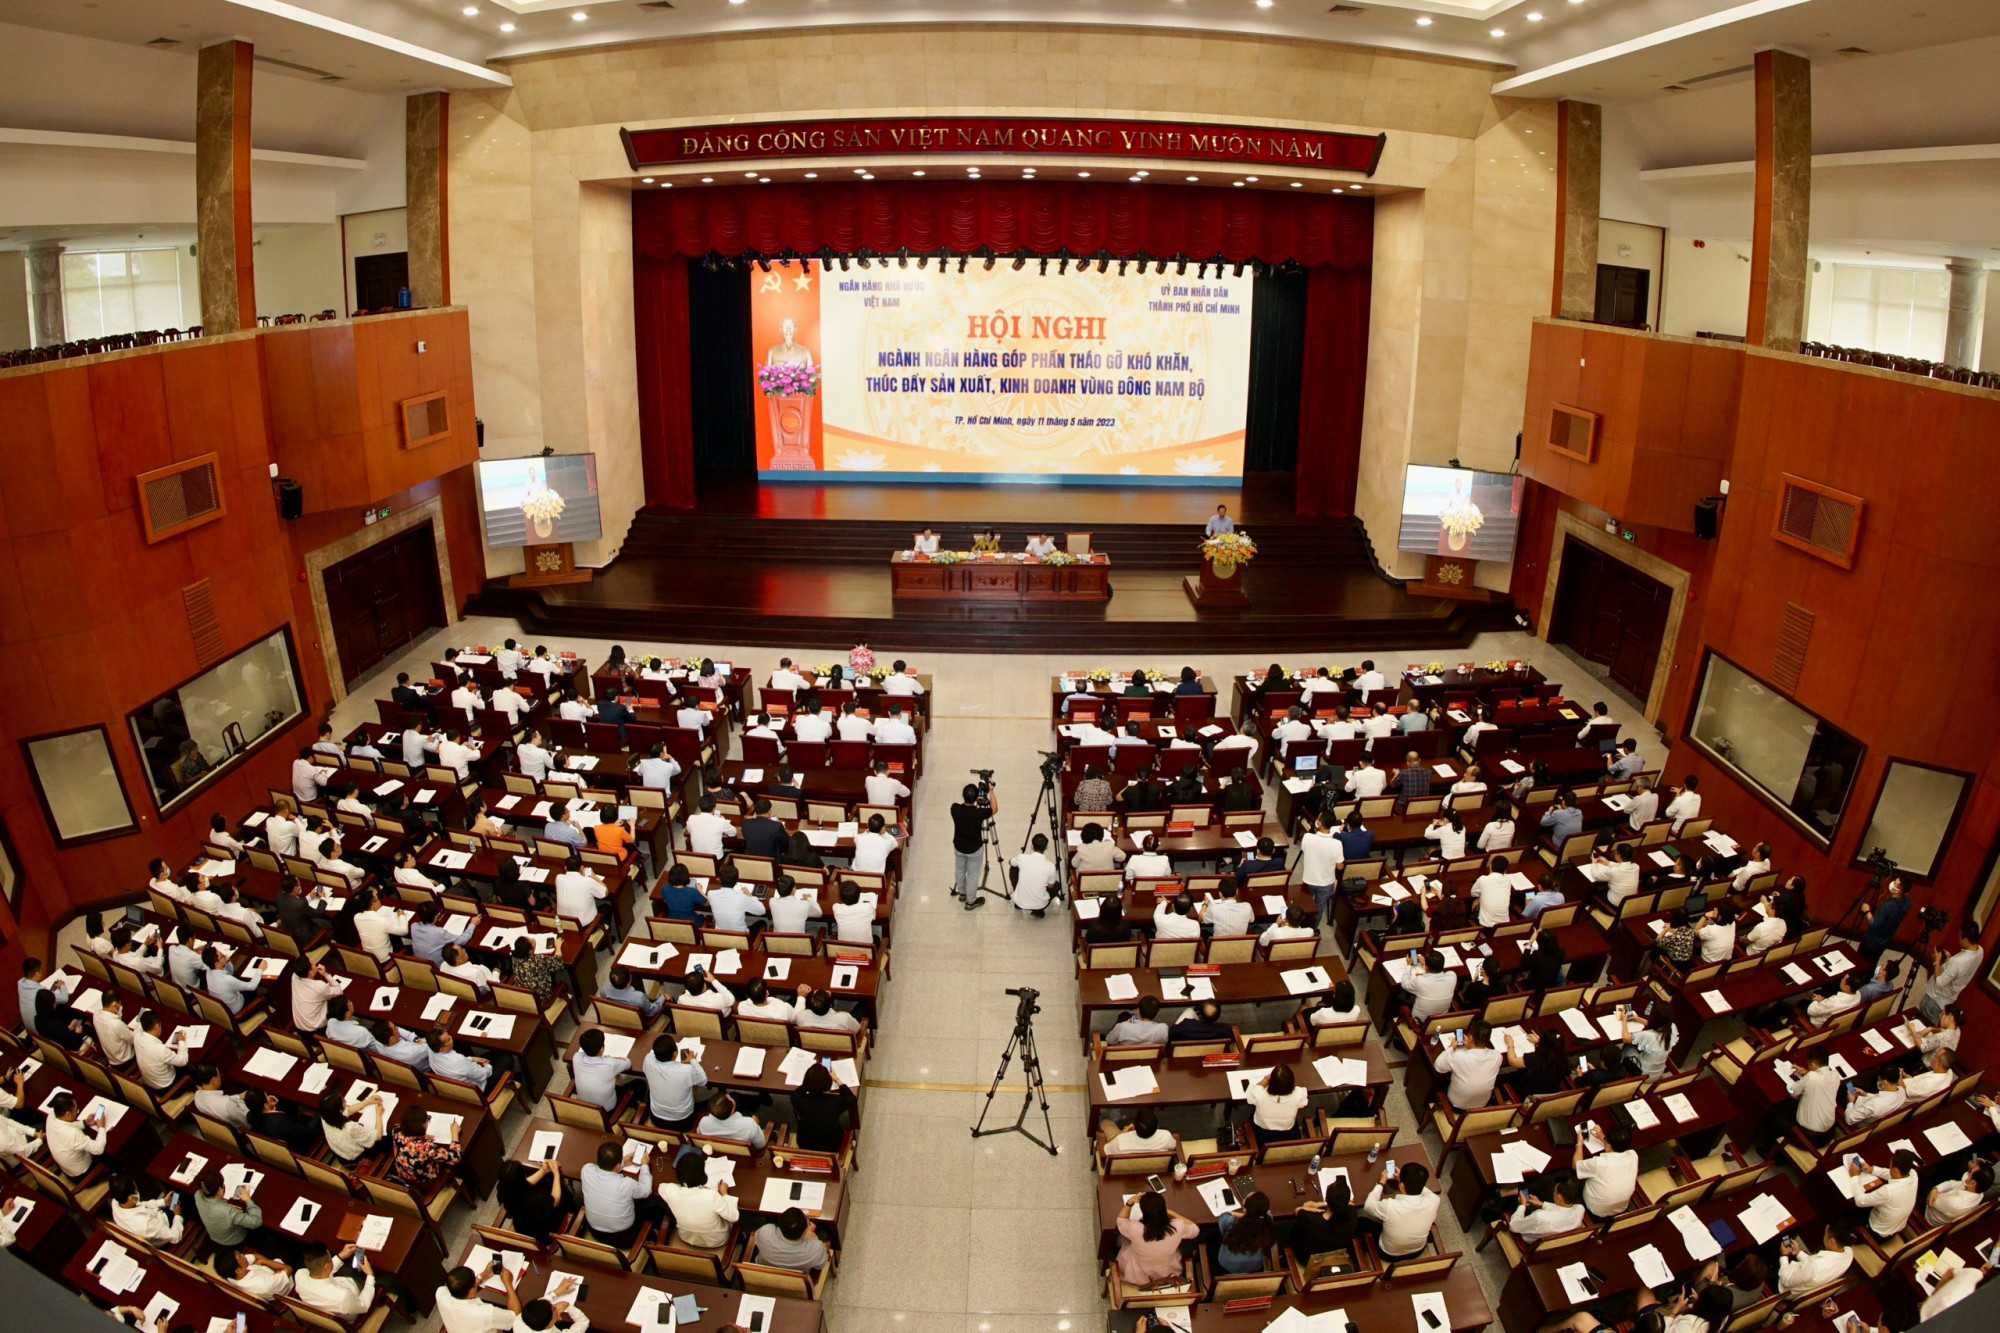 Hội nghị giải pháp tín dụng thúc đẩy sản xuất, kinh doanh vùng Đông Nam Bộ diễn ra tại TPHCM chiều 11/5.